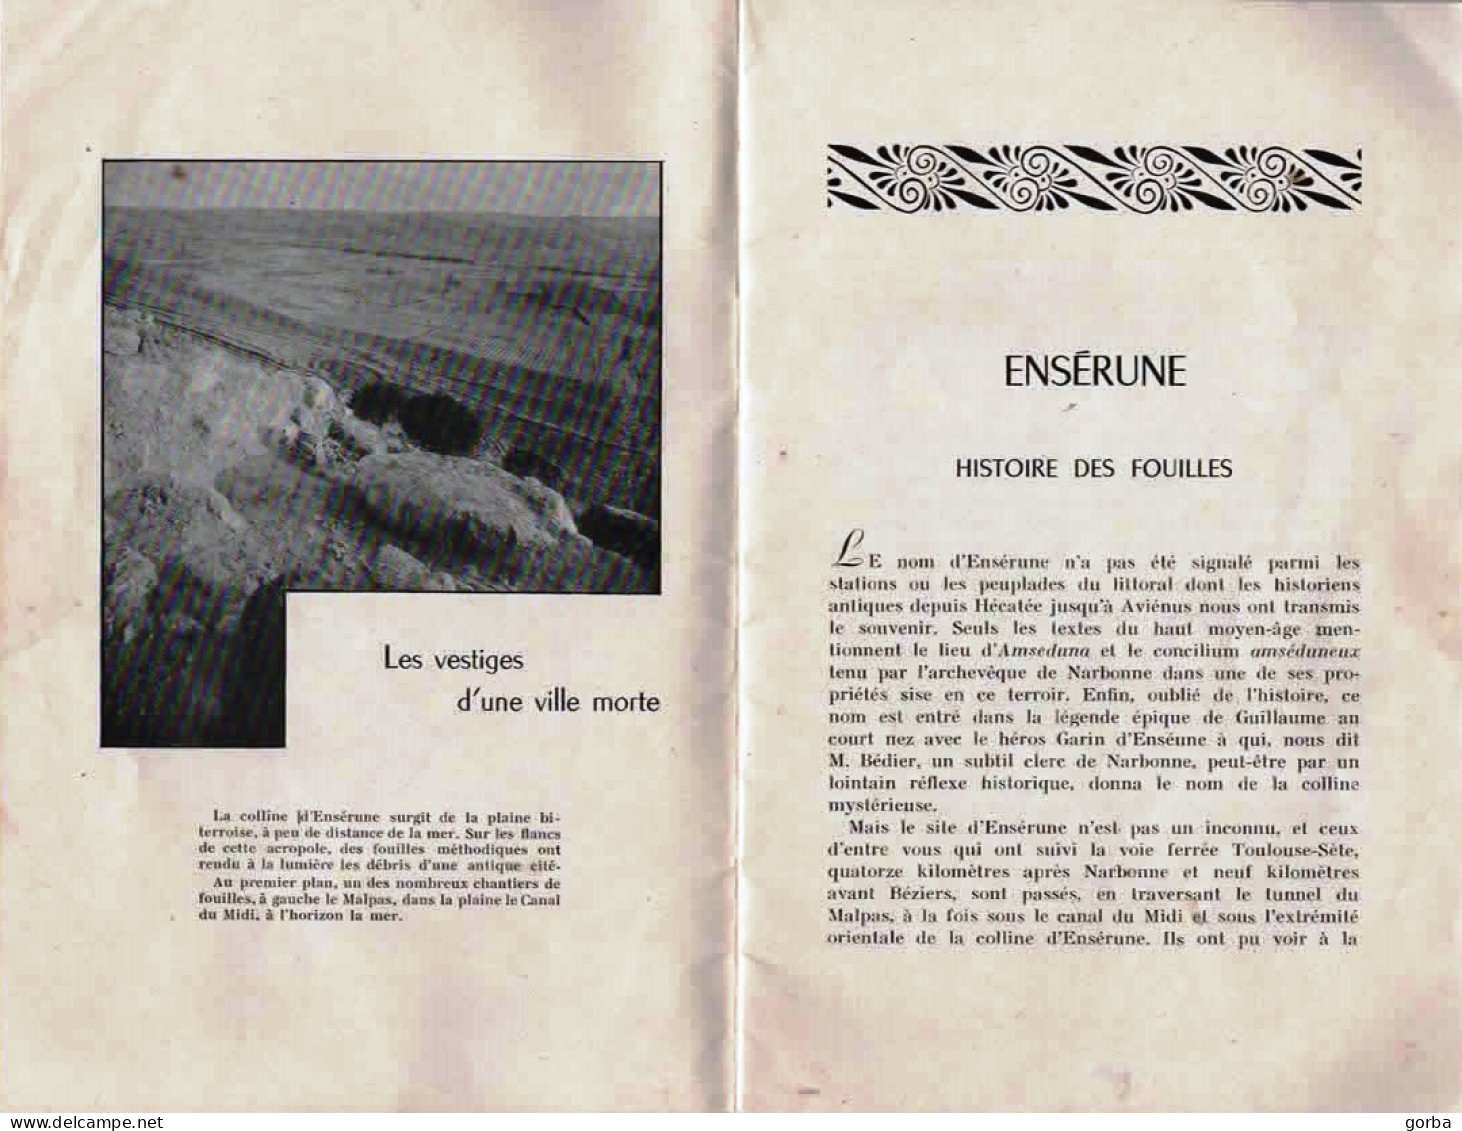 *Livre Souple - ENSERUNE - Histoire Des Fouilles Site "d'ENSERUNE" à NISSAN Les ENSERUNE (34) - Archeology